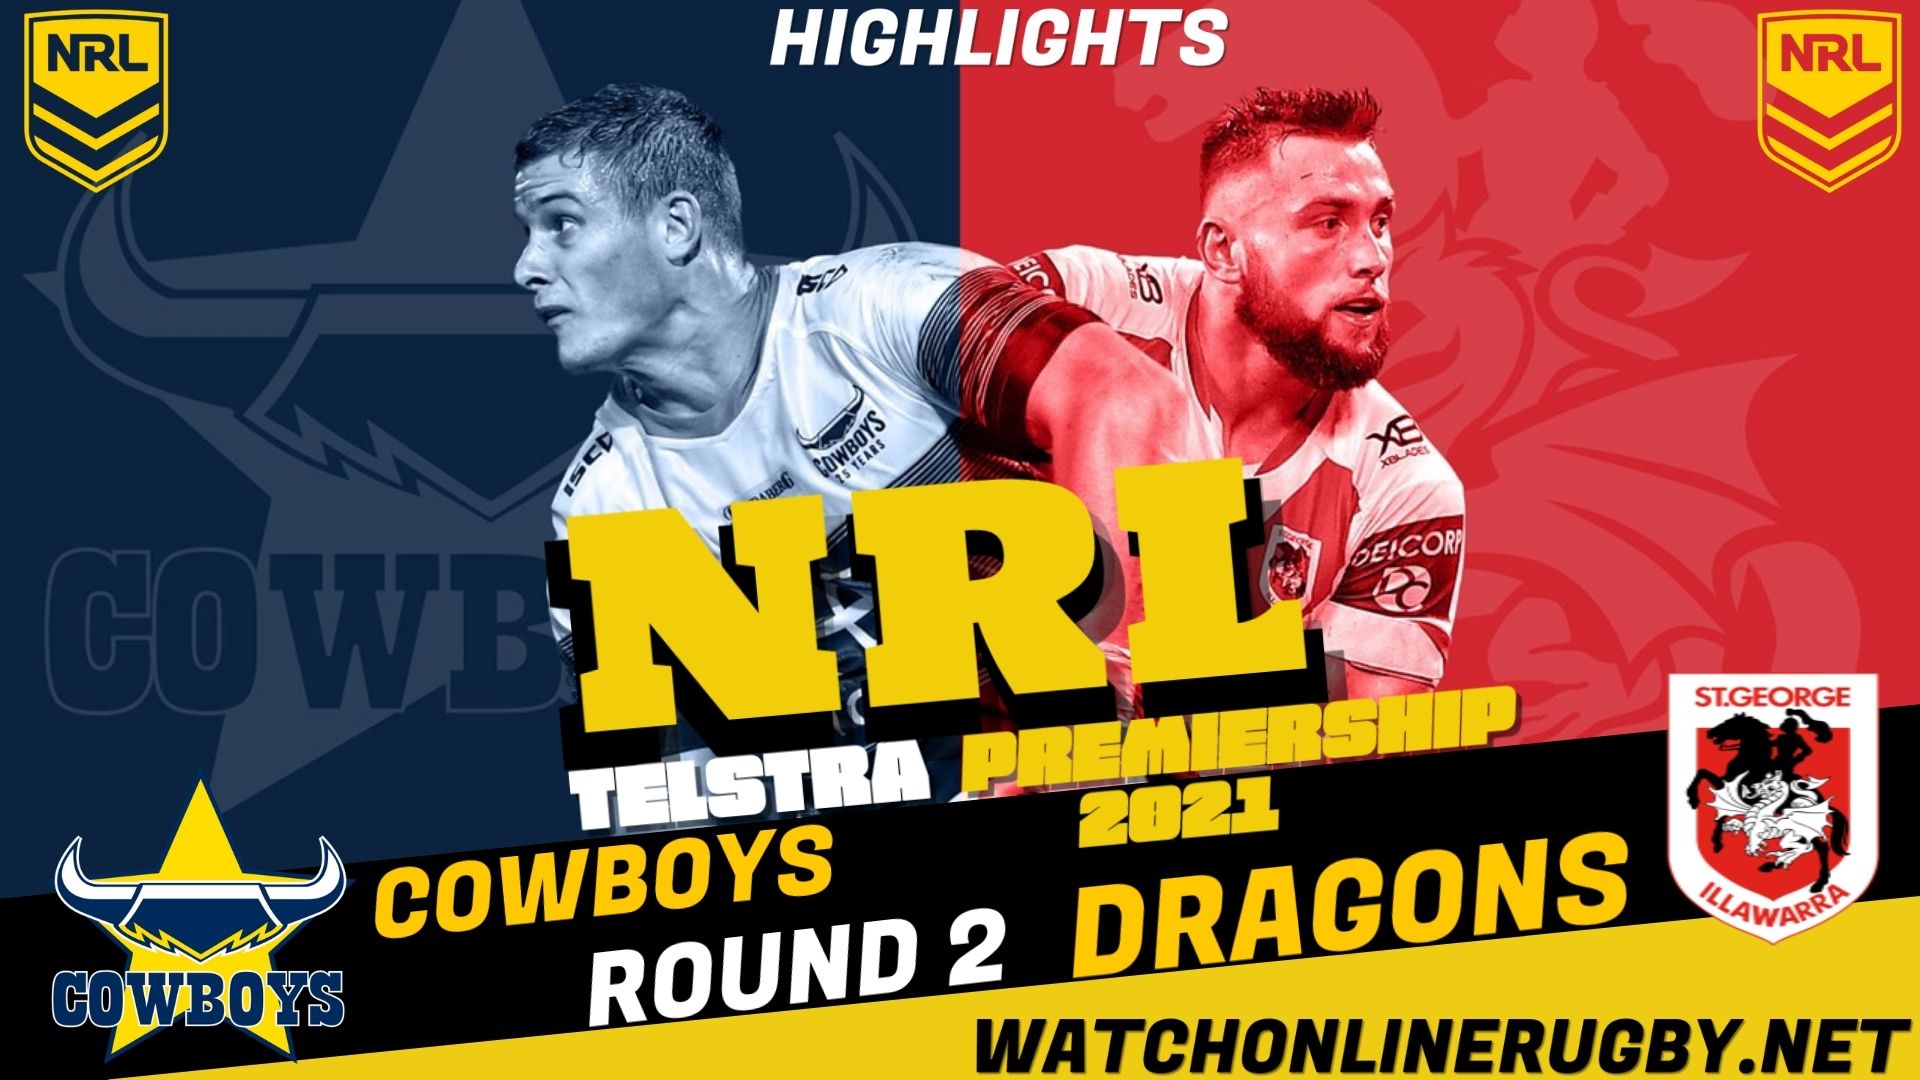 Cowboys Vs Dragons Highlights RD 2 NRL Rugby